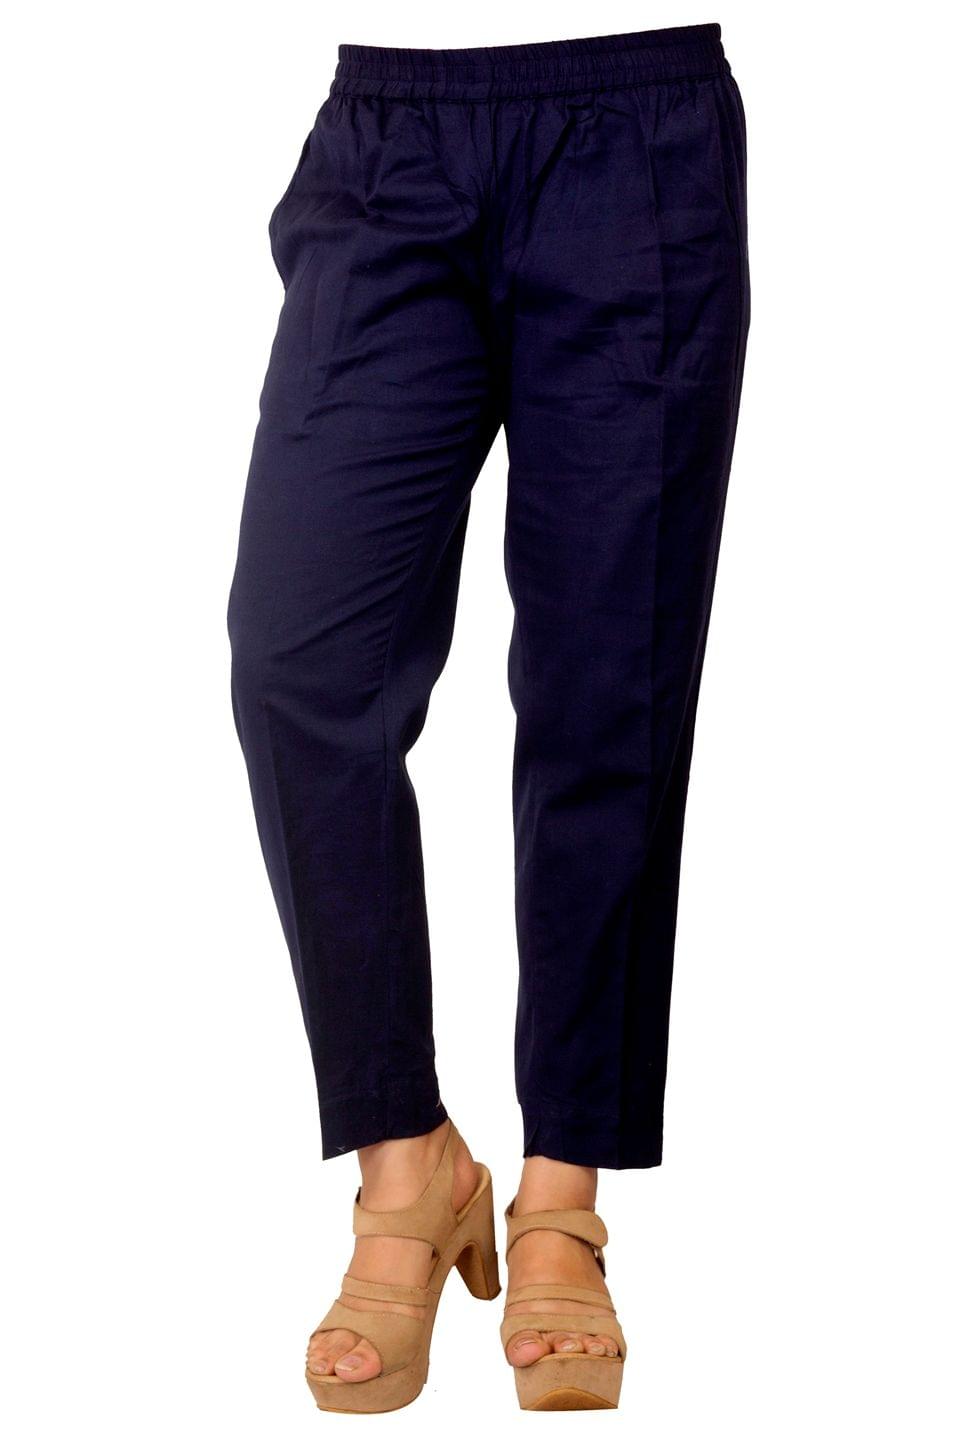 Women's Navy Blue Cotton Pant